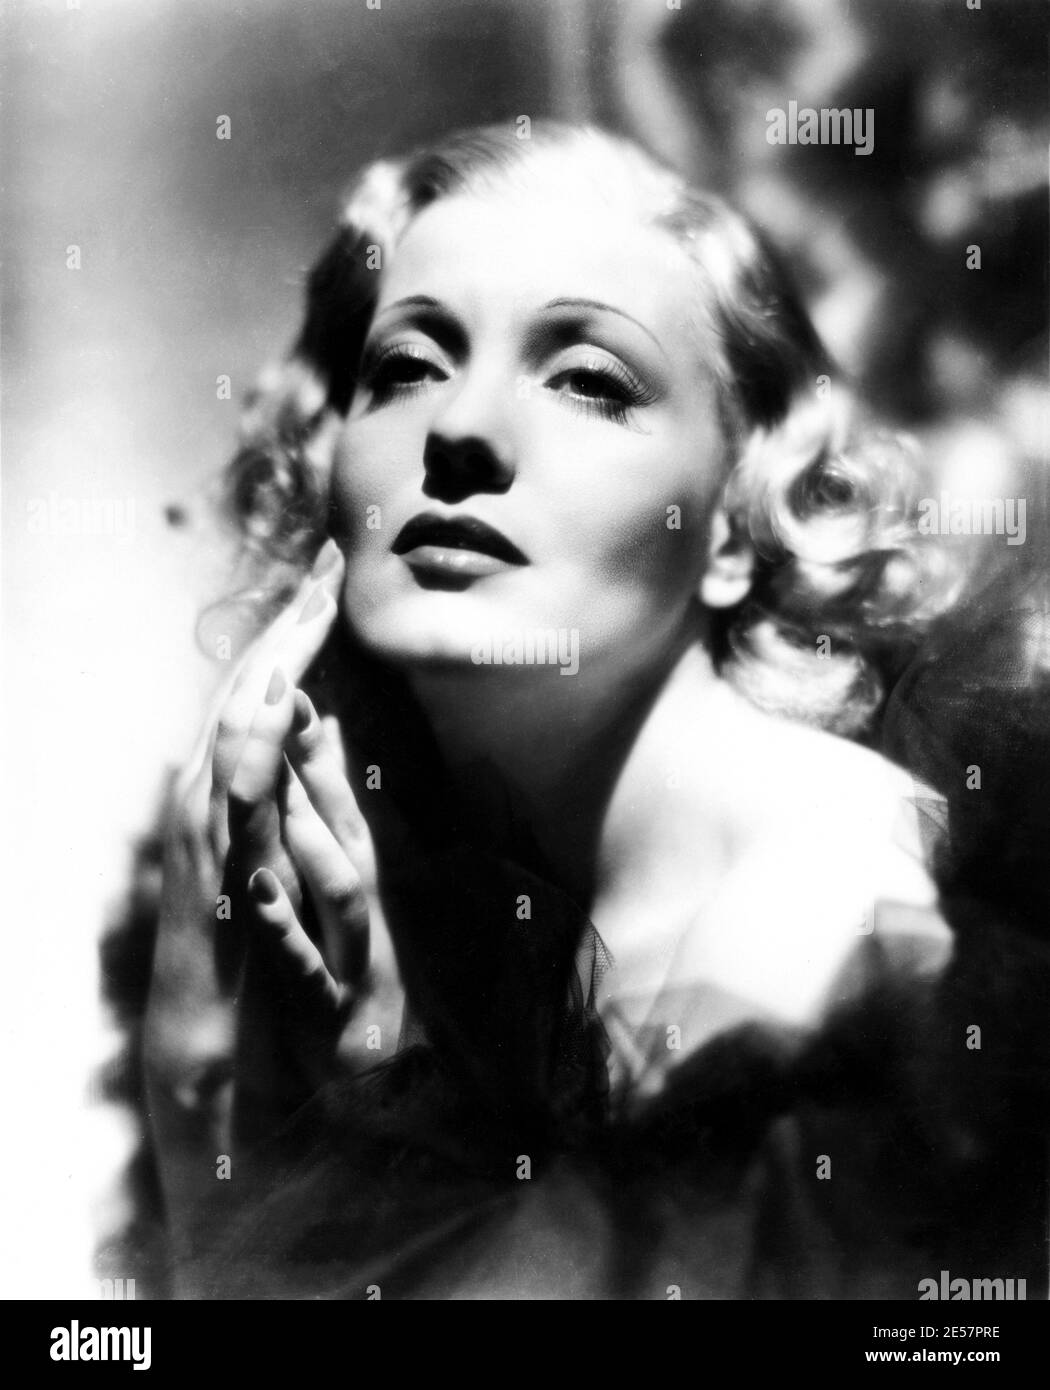 1939 , USA : die gefeierte italienische Filmschauspielerin ISA MIRANDA ( 1905 - 1982 ) , Geburtsname Ines Isabella Sampiero, in einer Pubblicity in Paramount Studios während seiner Hollywood-Zeit gedreht - FILM - KINO - FILM - Attrice - femme fatale - mani - mano - Hand - Hände - Boldie - blonde Haare - bionda - capelli biondi - Tüll - Zigarette -- -- Archivio GBB Stockfoto